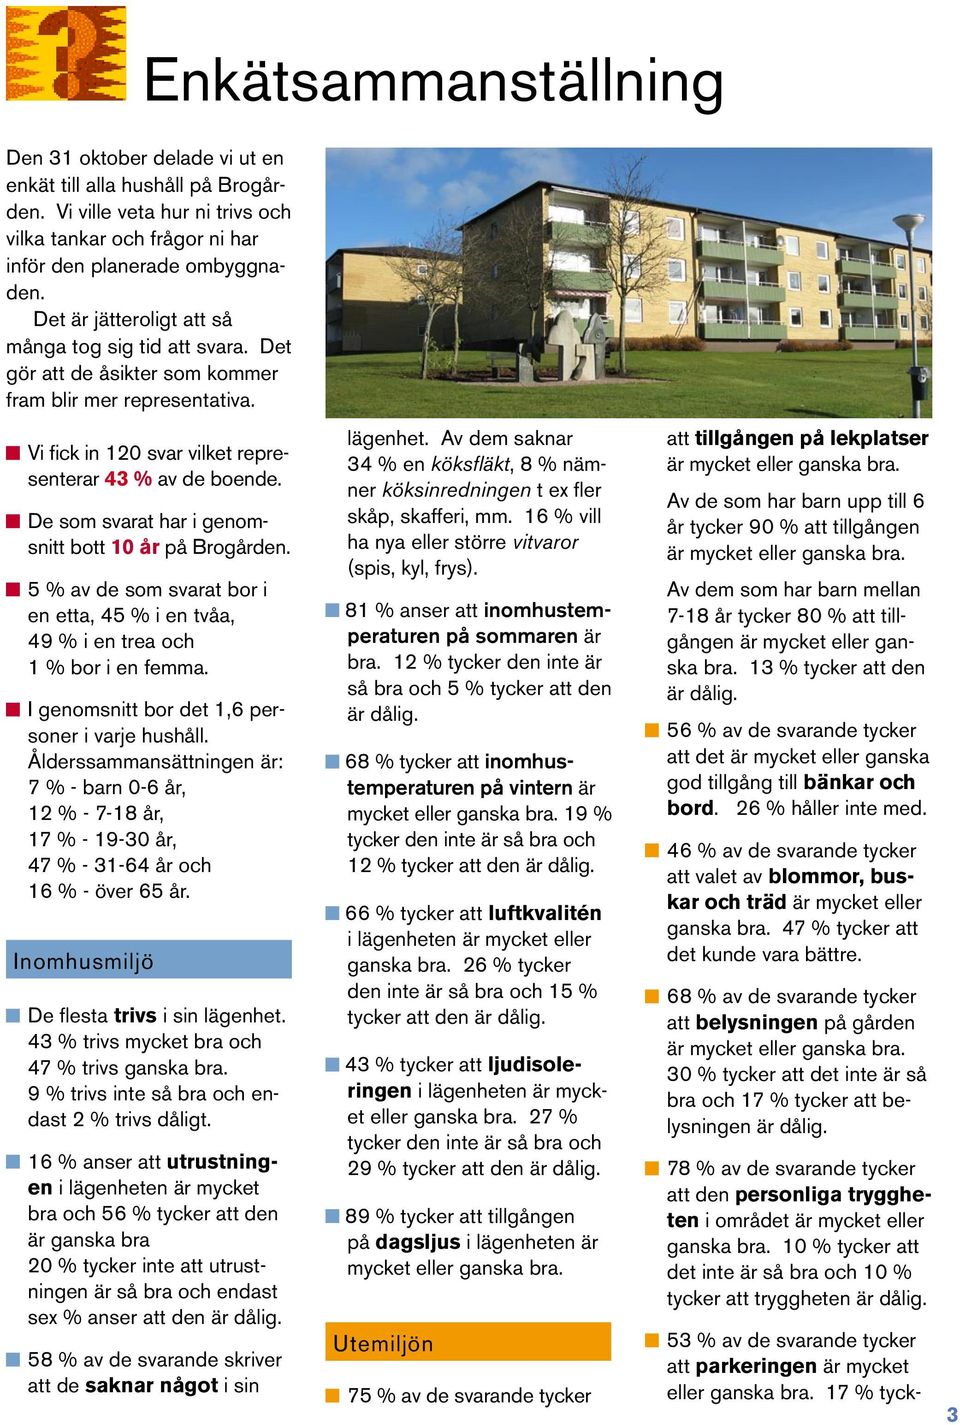 De som svarat har i genomsnitt bott 10 år på Brogården. 5 % av de som svarat bor i en etta, 45 % i en tvåa, 49 % i en trea och 1 % bor i en femma. I genomsnitt bor det 1,6 personer i varje hushåll.